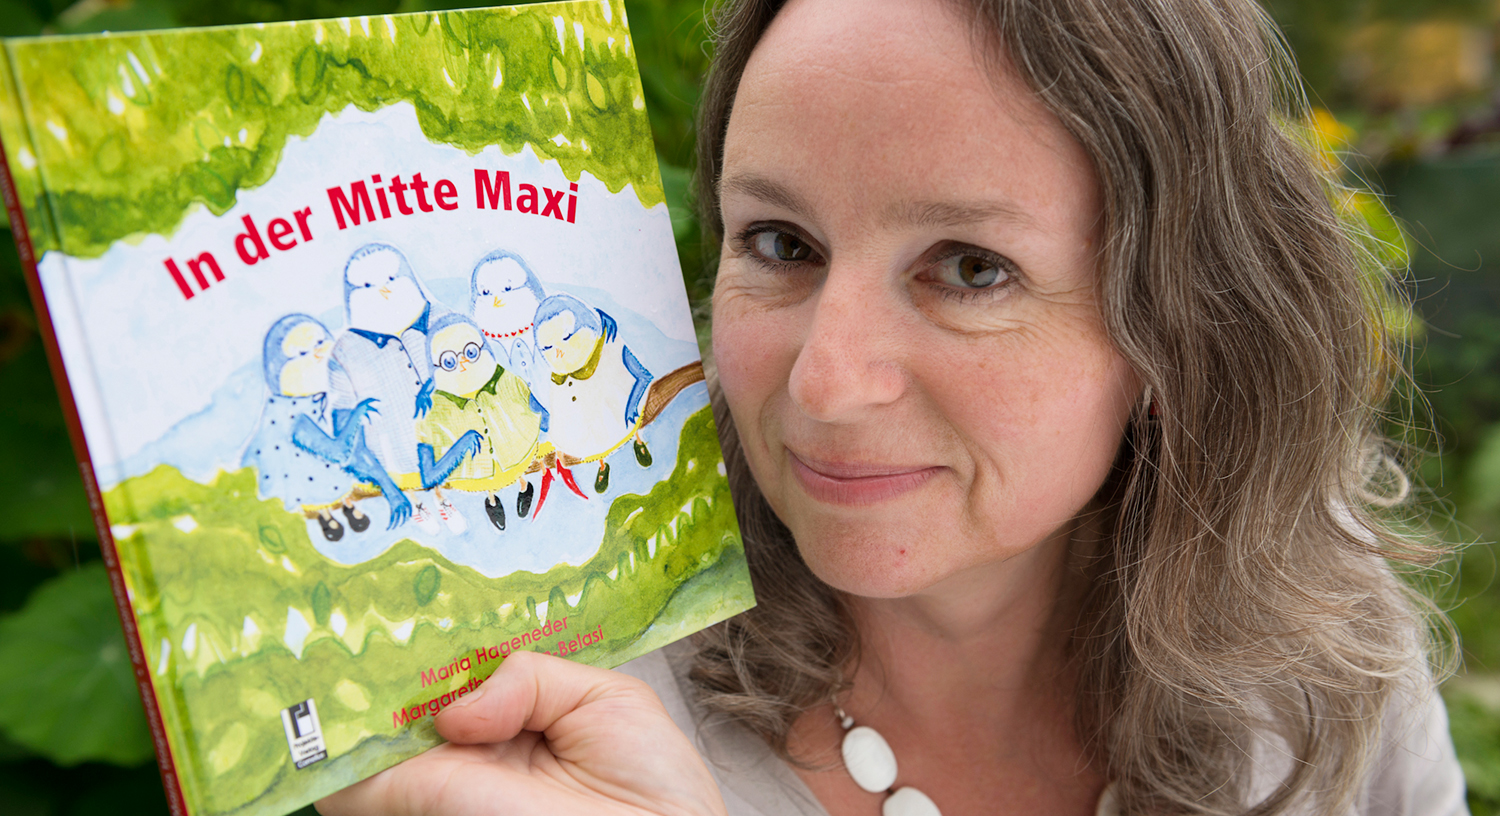 Die Autorin Maria Hageneder mit ihrem frisch gedrucktem neuen Buch "In der Mitte Maxi"